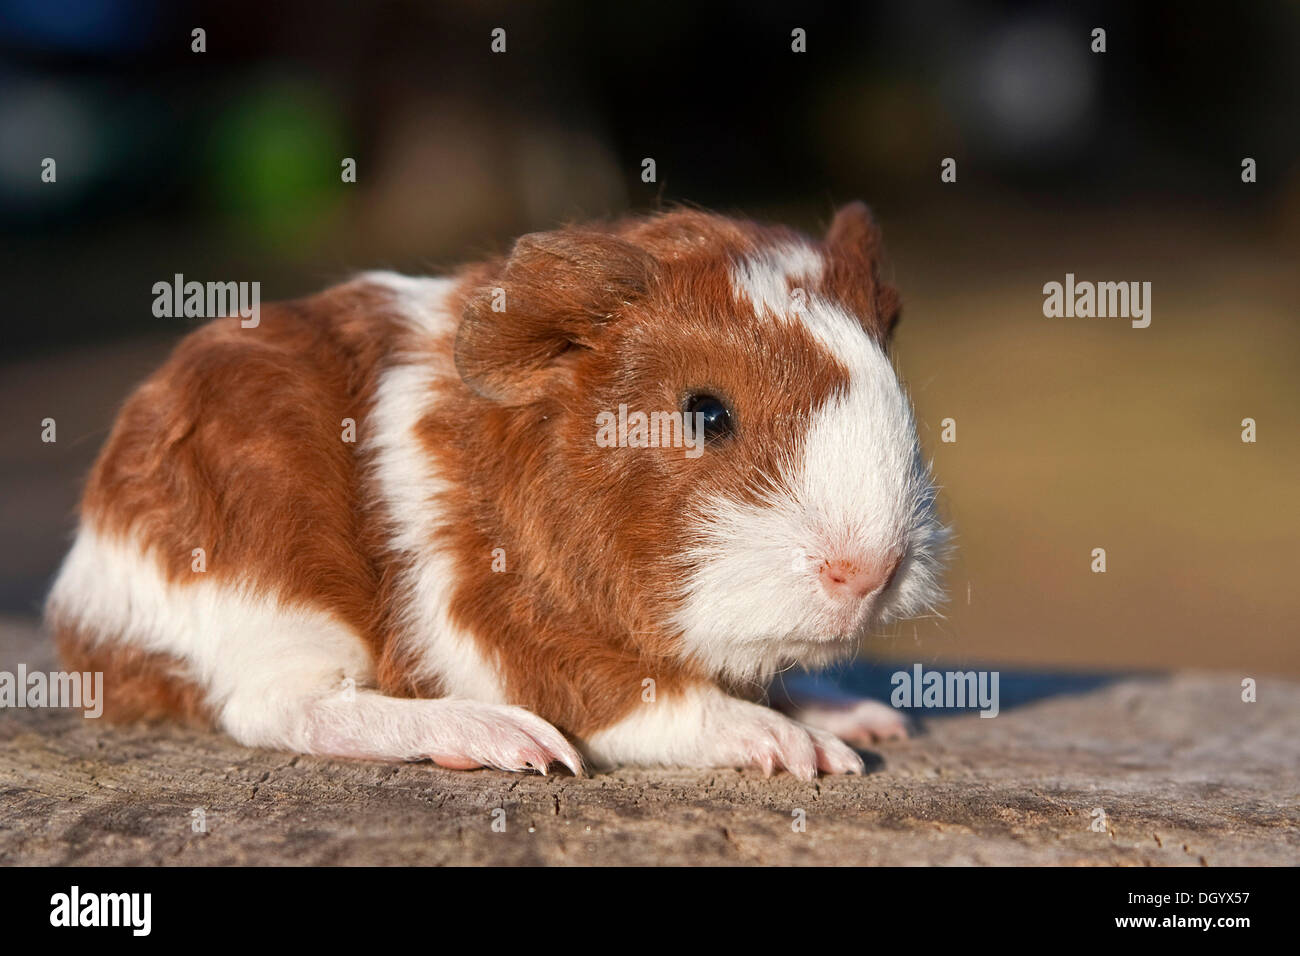 Young guinea pig (Cavia porcellus) Stock Photo